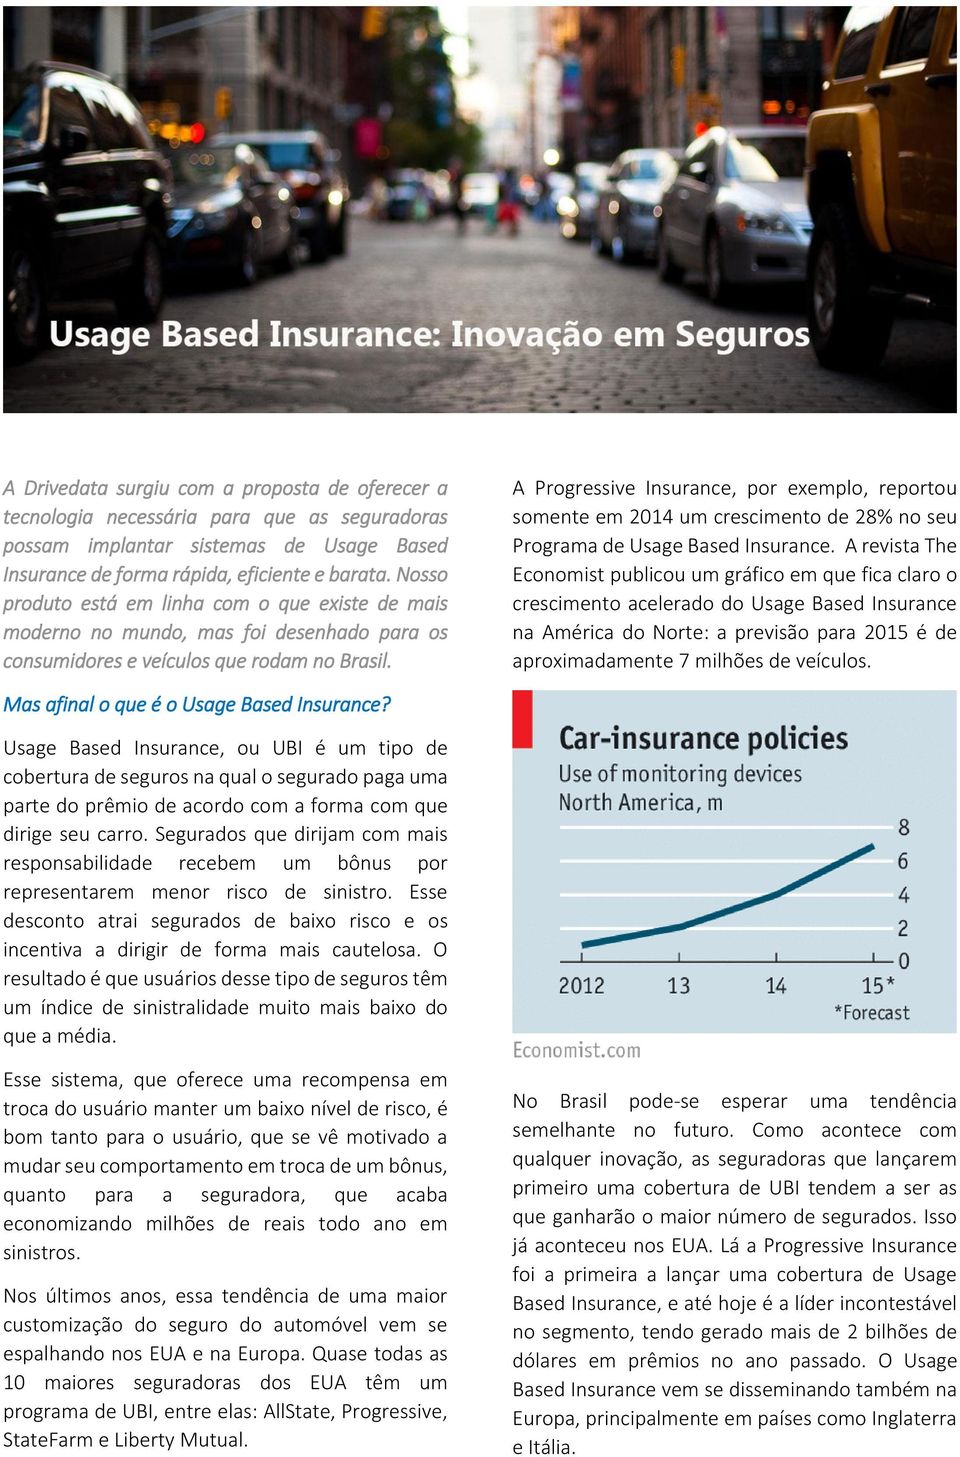 A Progressive Insurance, por exemplo, reportou somente em 2014 um crescimento de 28% no seu Programa de Usage Based Insurance.